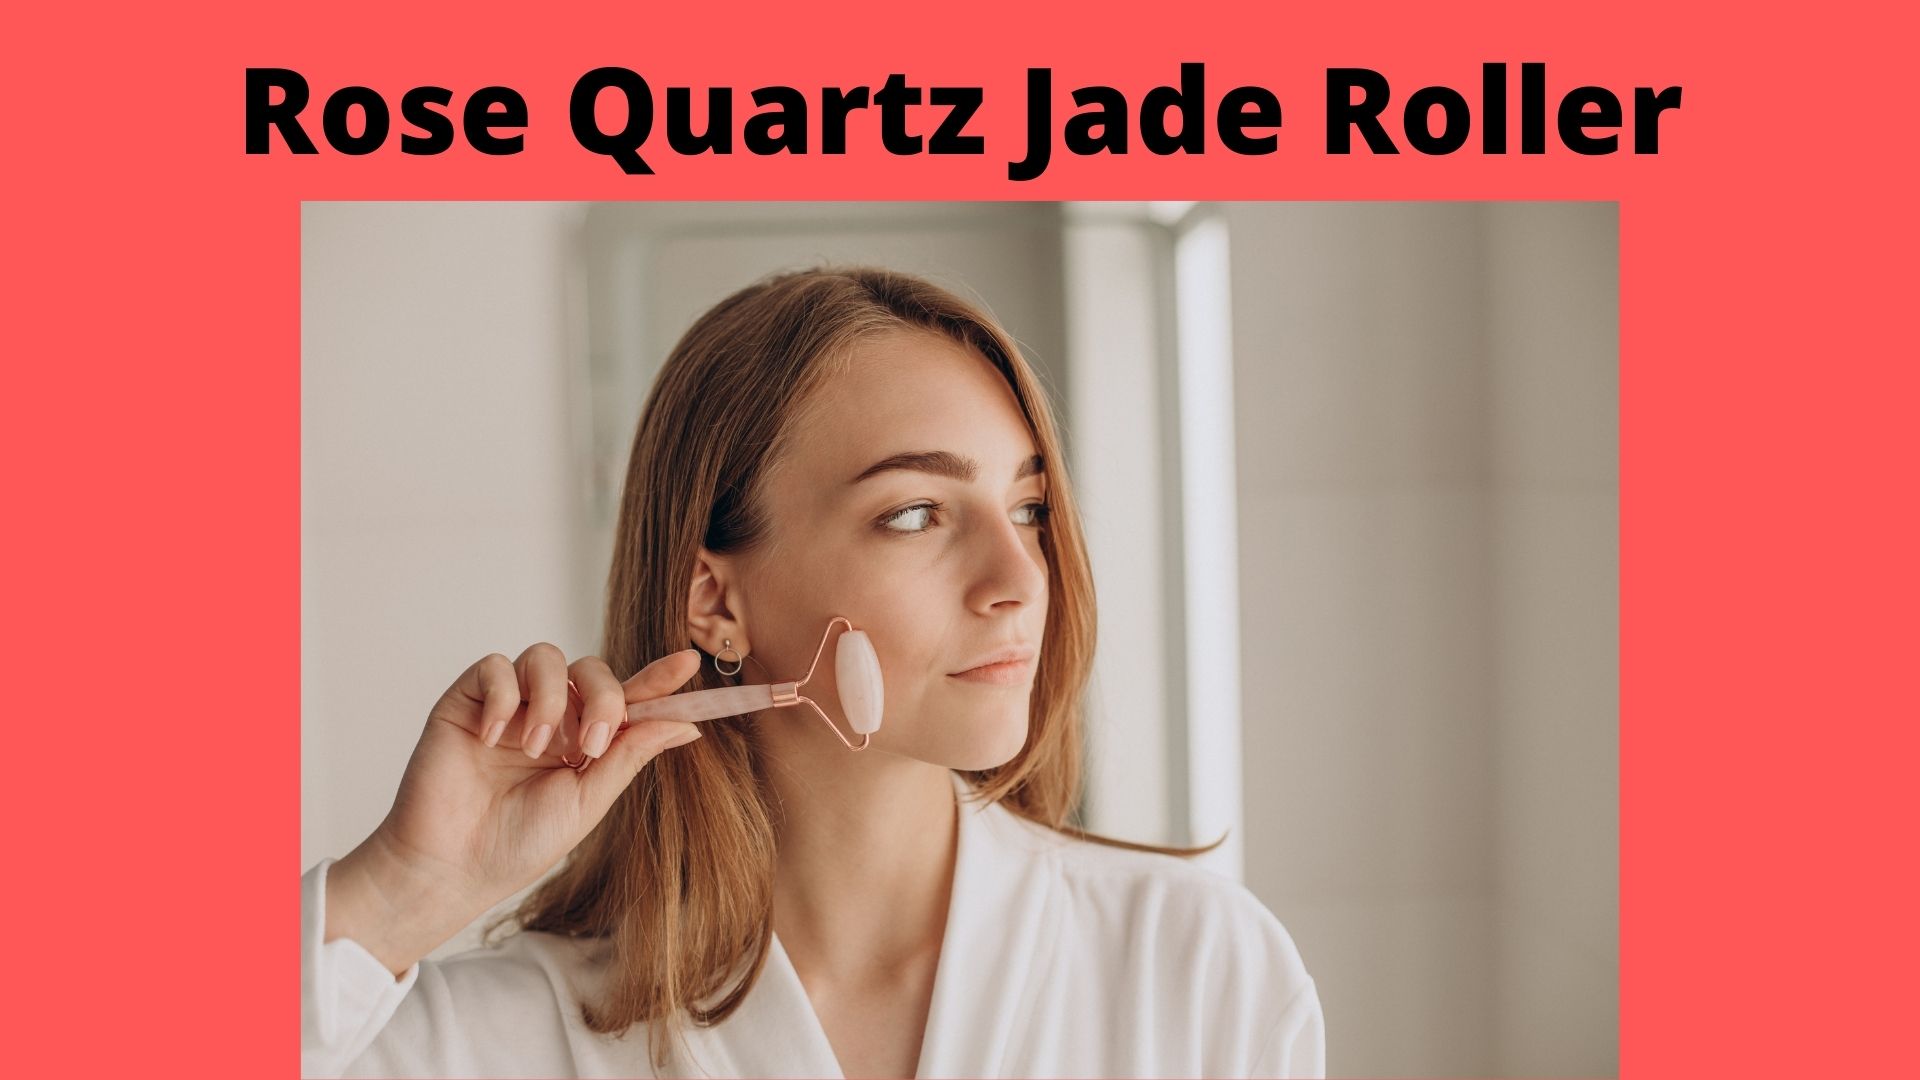 public/uploads/2022/01/Rose-Quartz-Jade-Roller.jpg